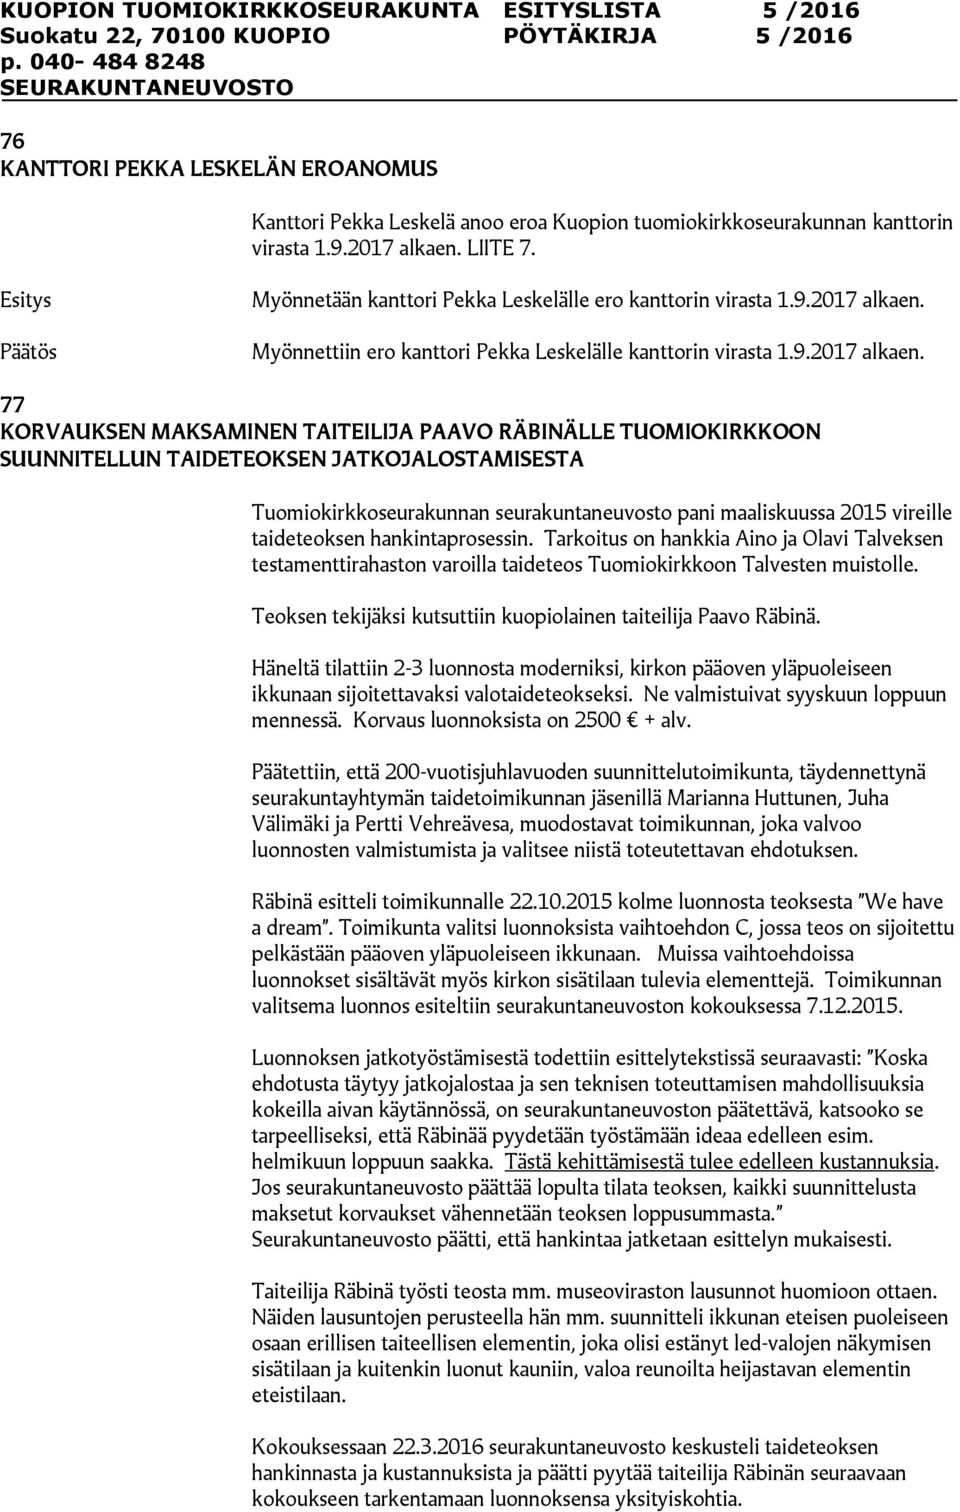 Myönnettiin ero kanttori Pekka Leskelälle kanttorin virasta 1.9.2017 alkaen.